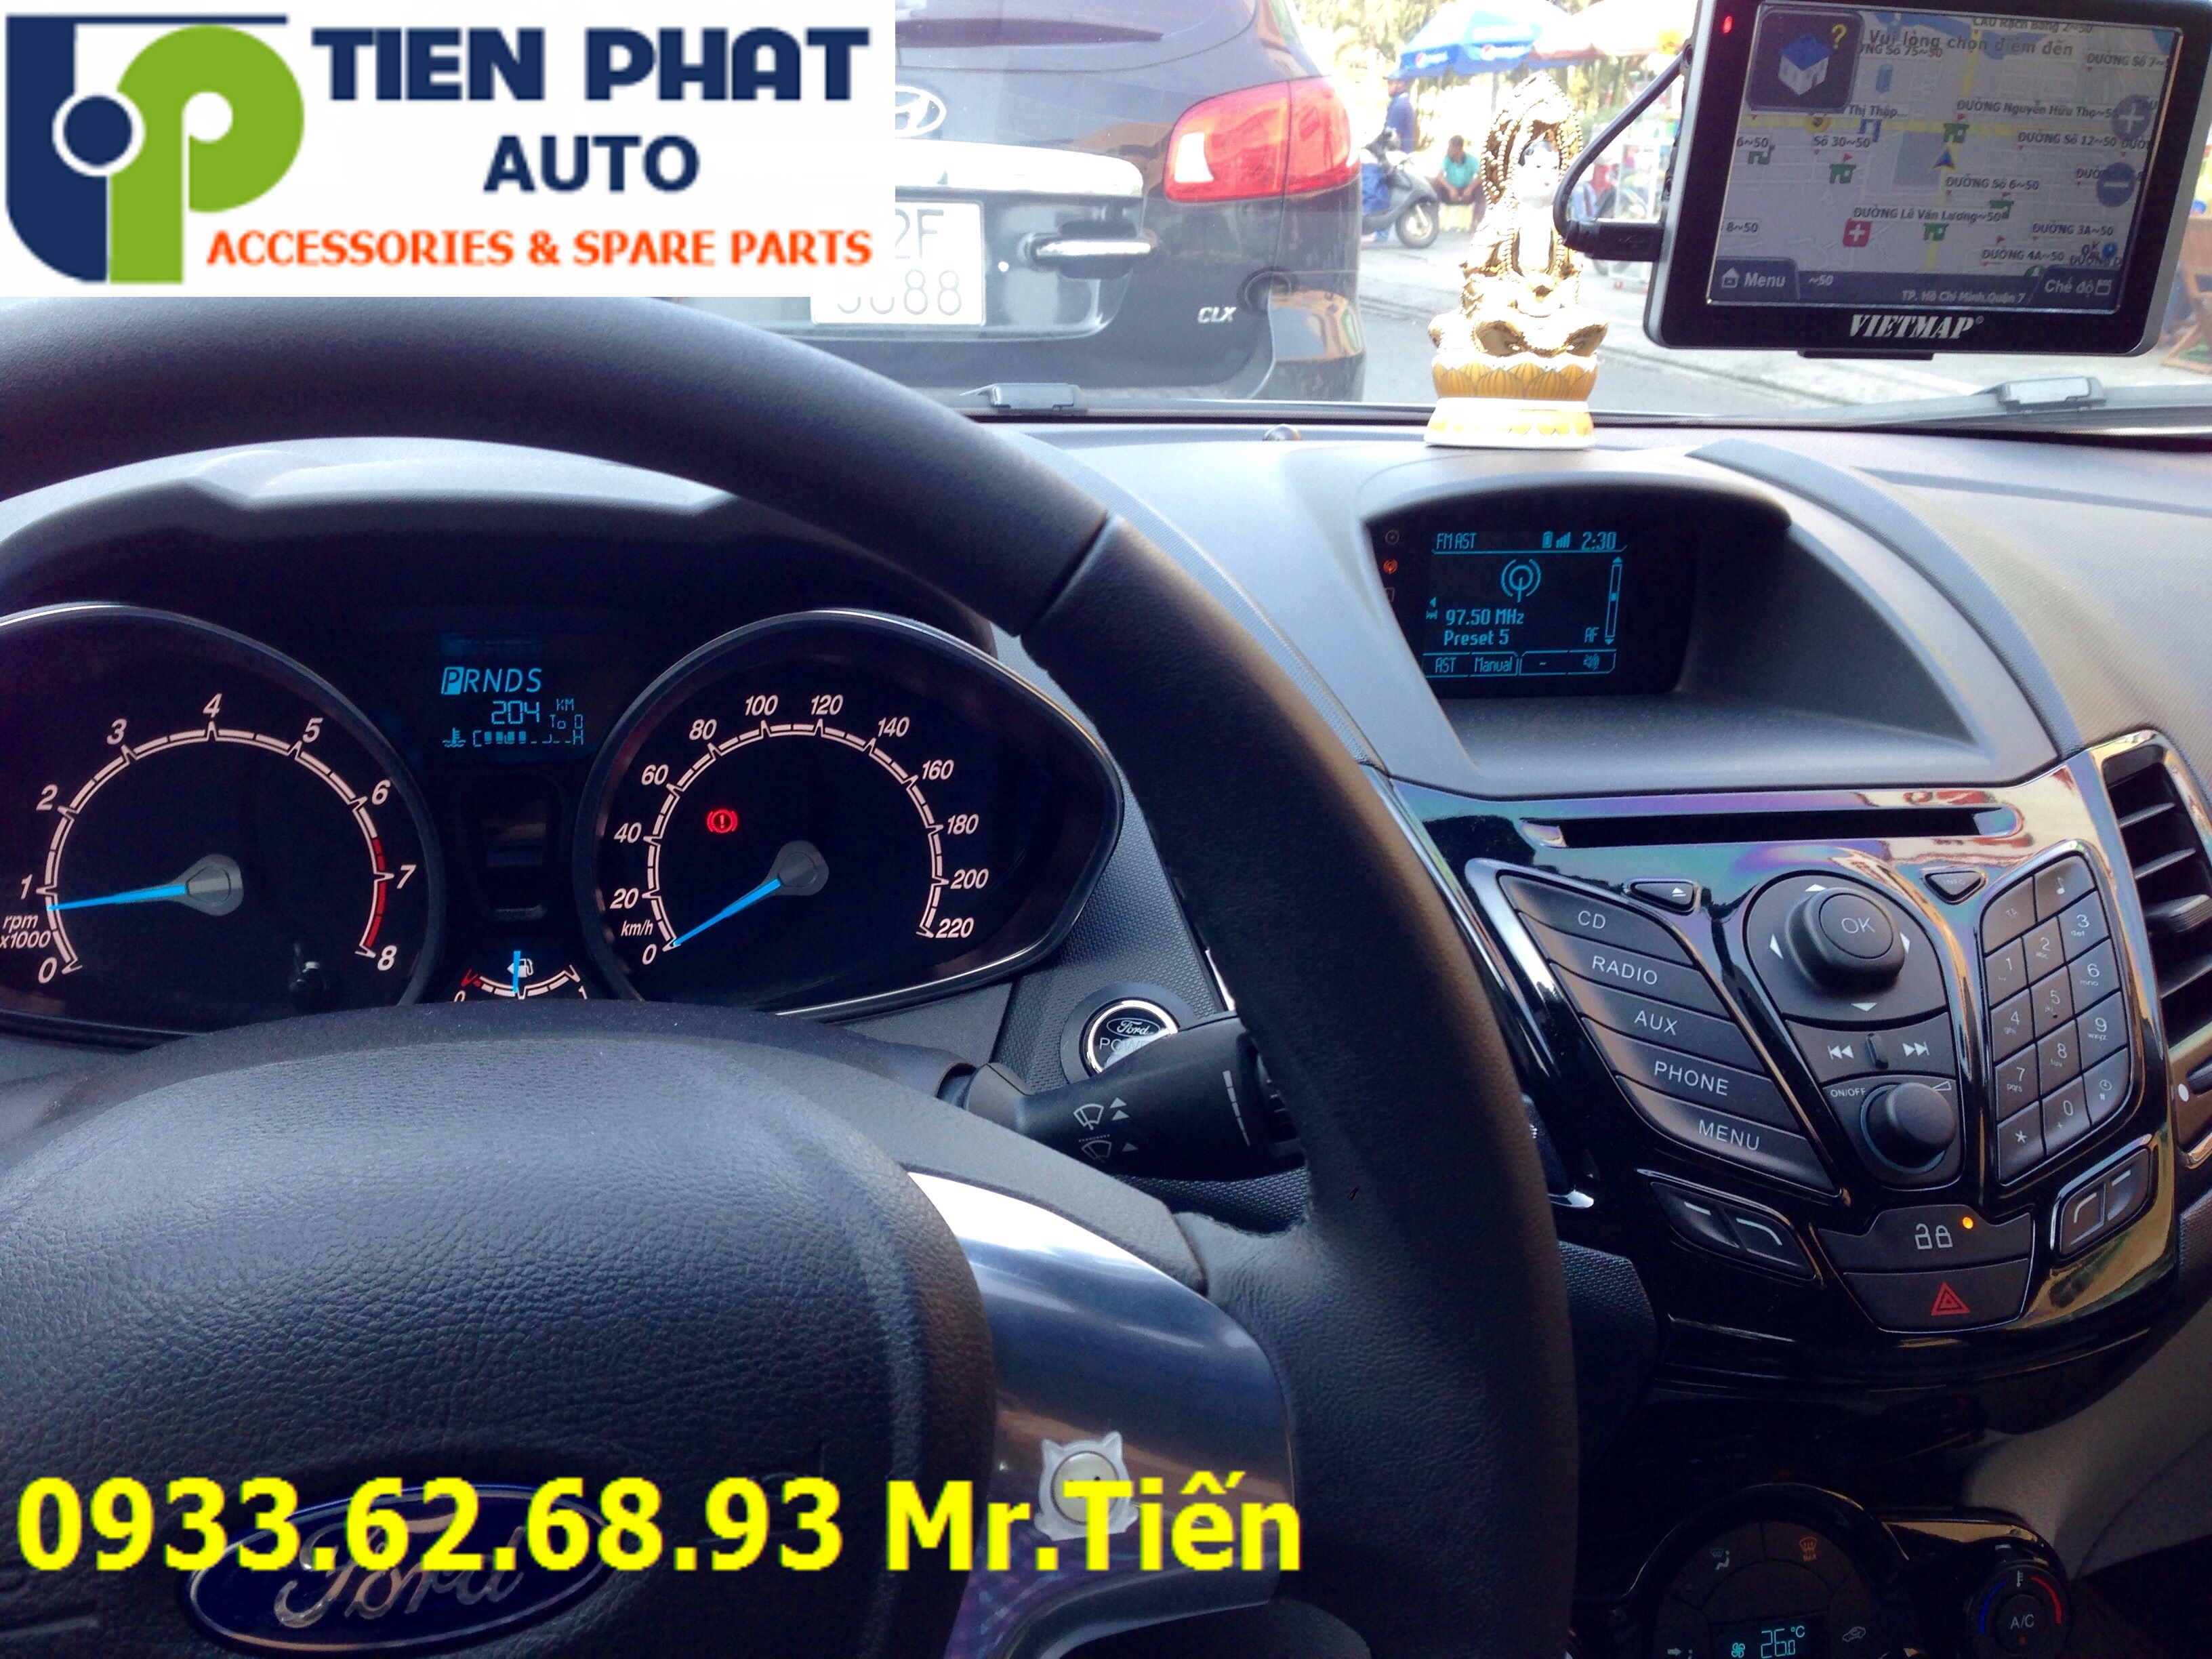 Lắp Thiết Bị Dẫn Đường (GPS) VietMap S1 Cho Xe Ô Tô Tại Nhà Bè Uy Tín Nhanh